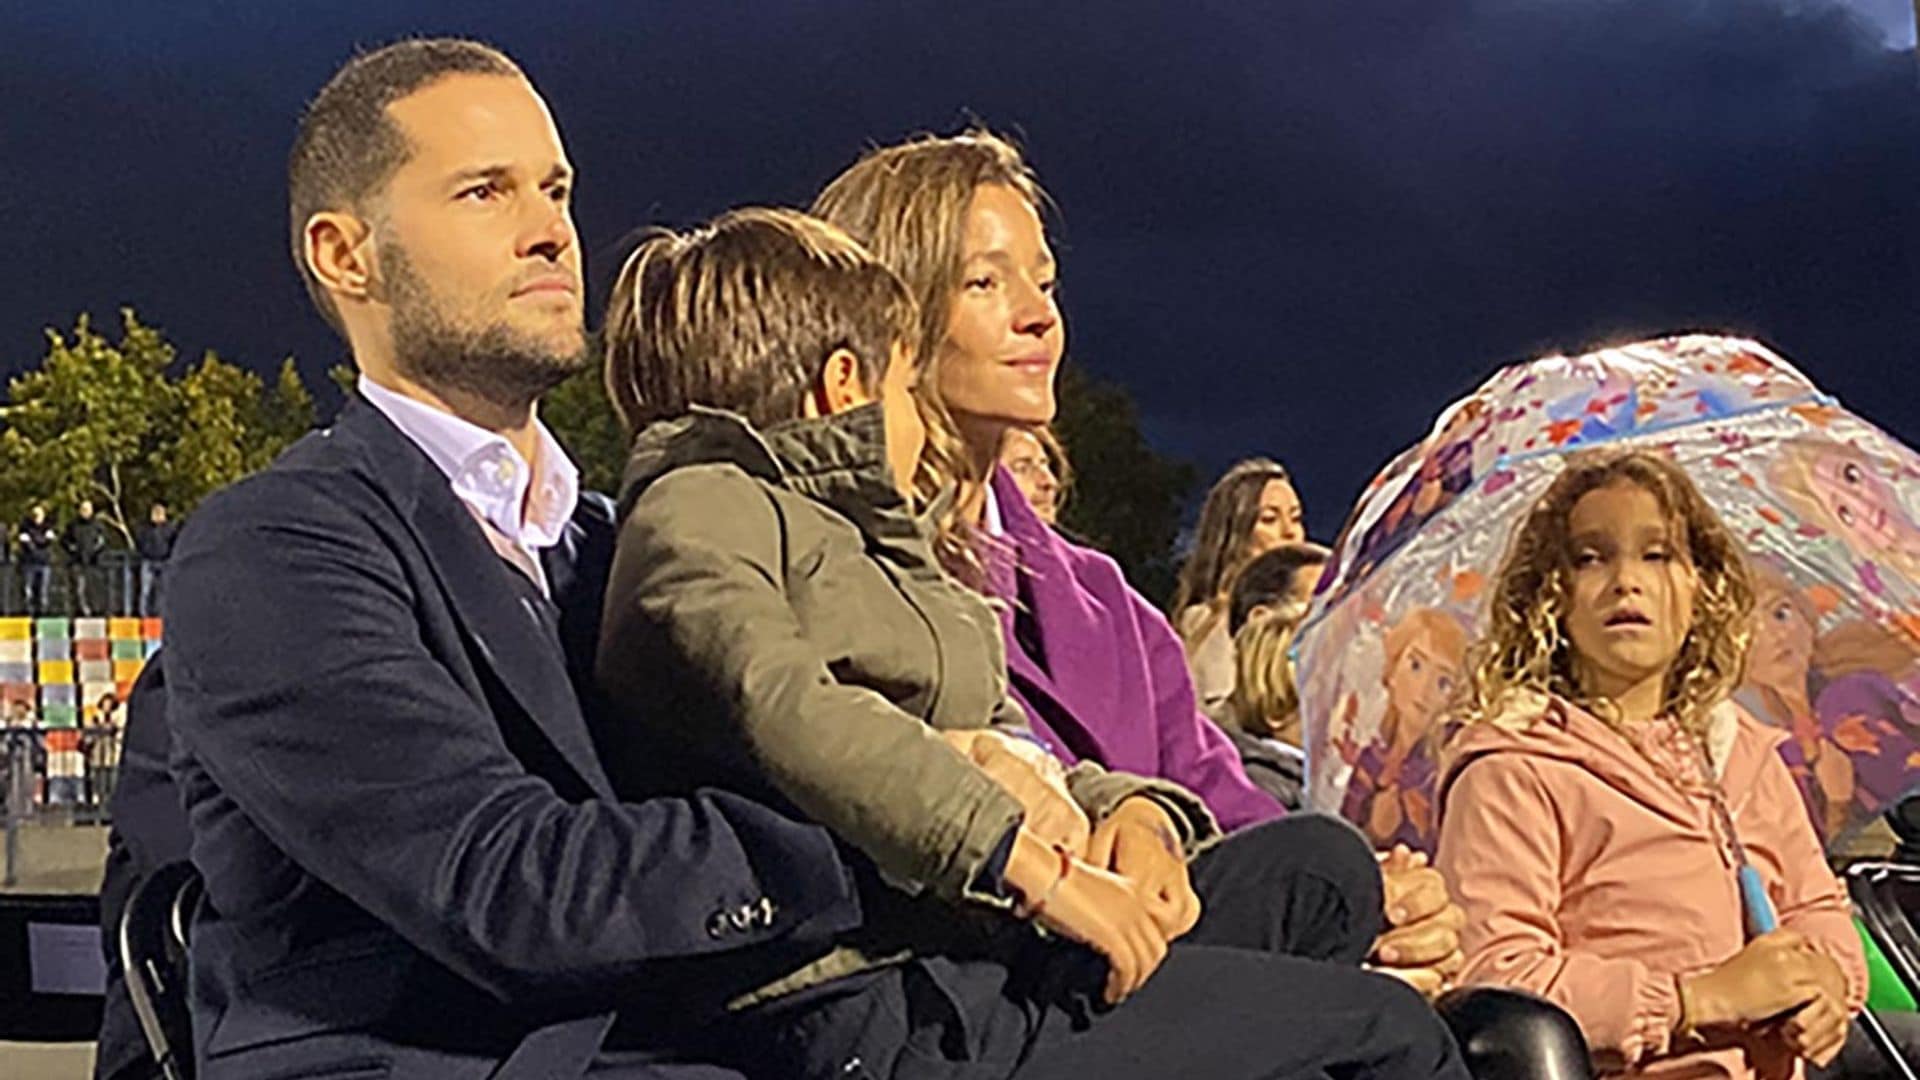 La emoción de Malena Costa y sus hijos en el homenaje a Mario Suárez tras su retirada del fútbol